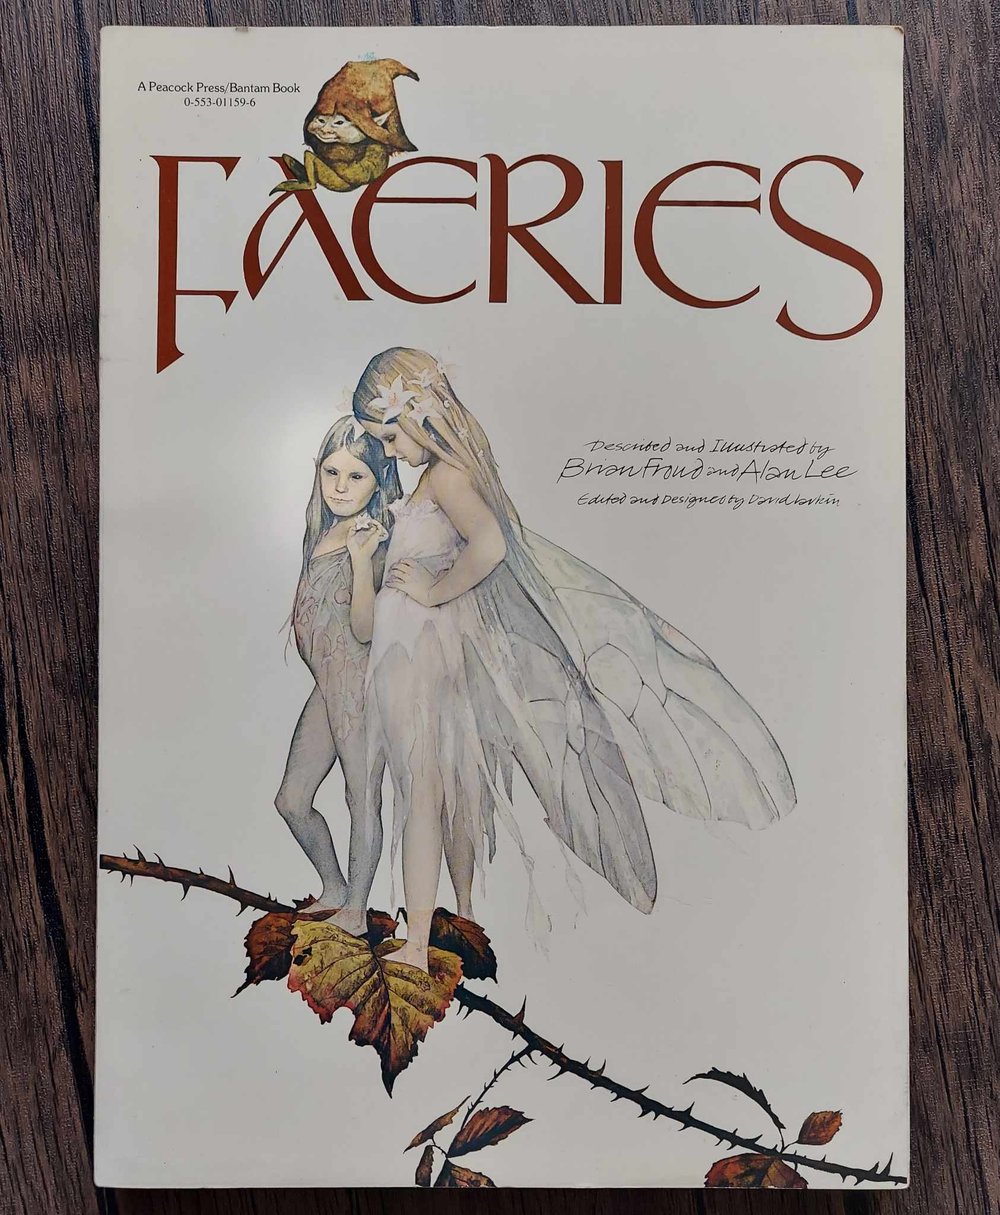 Faeries, by Brian Froud & Alan Lee.